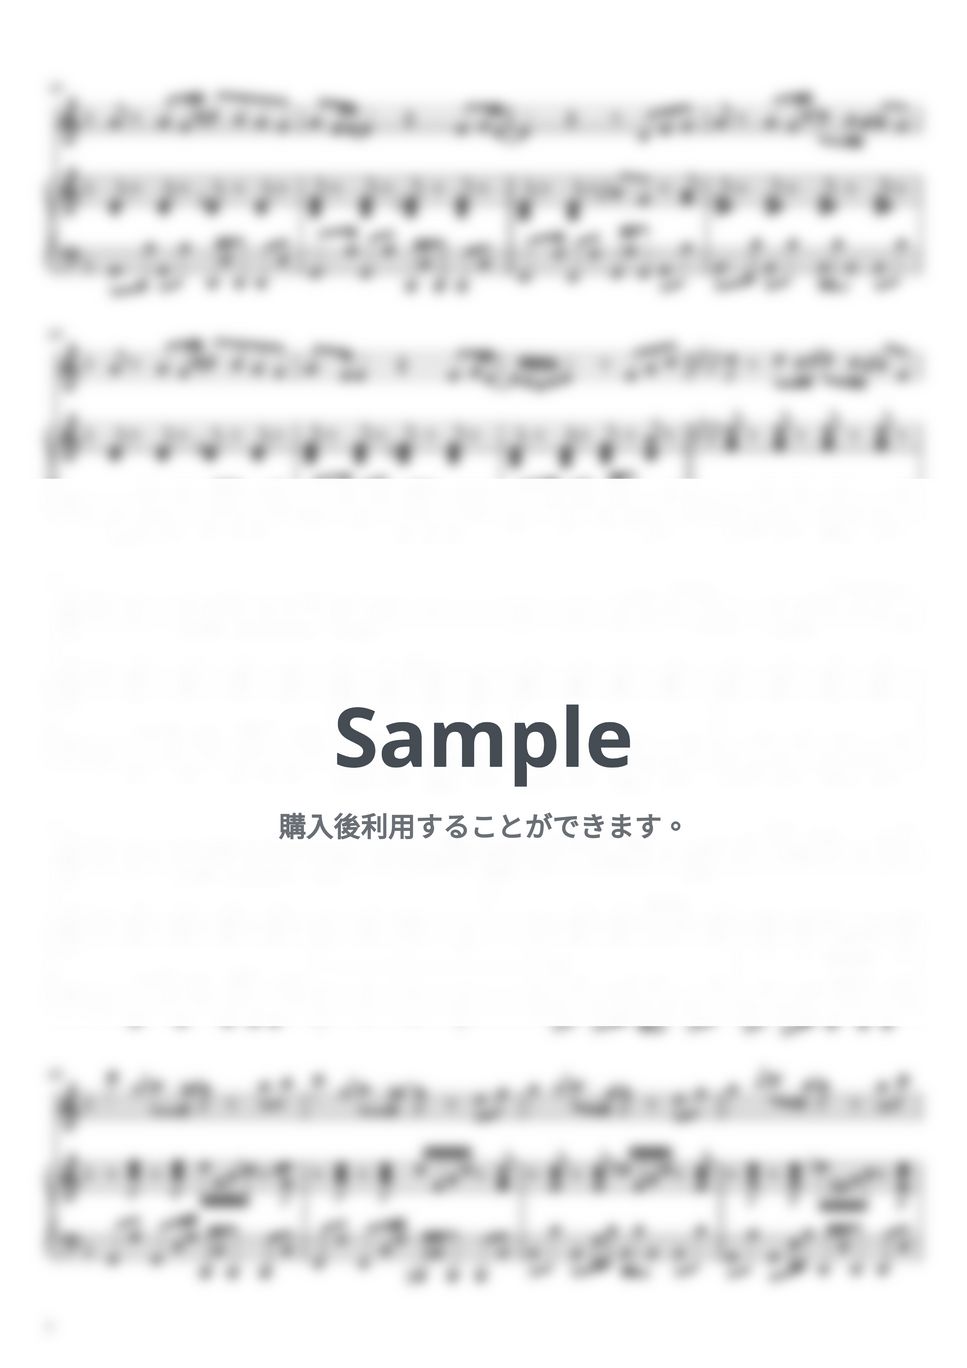 藤井 風 - きらり (フルート&ピアノ伴奏) by PiaFlu